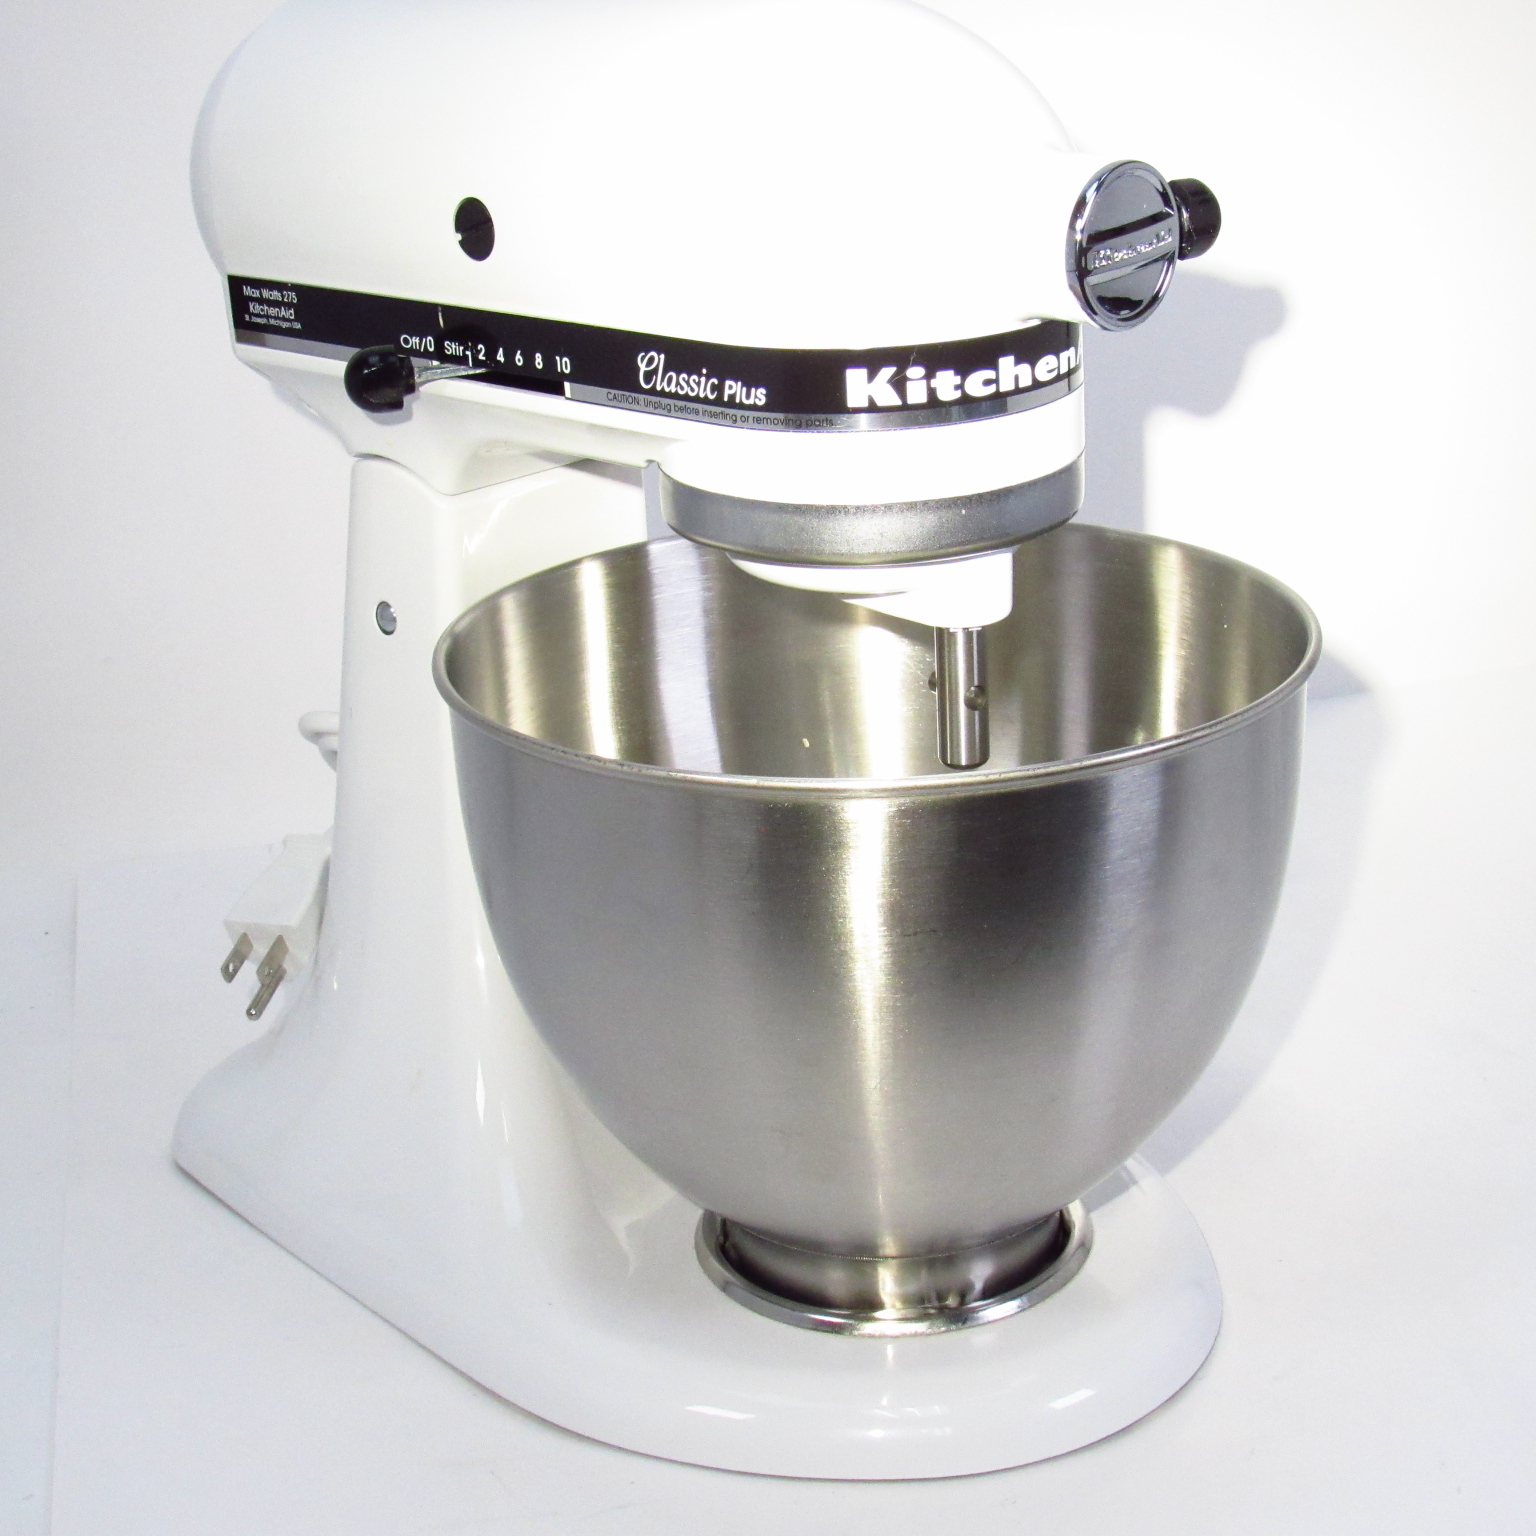 KitchenAid KSM75WH Classic Plus Tilt-Head Stand Mixer White